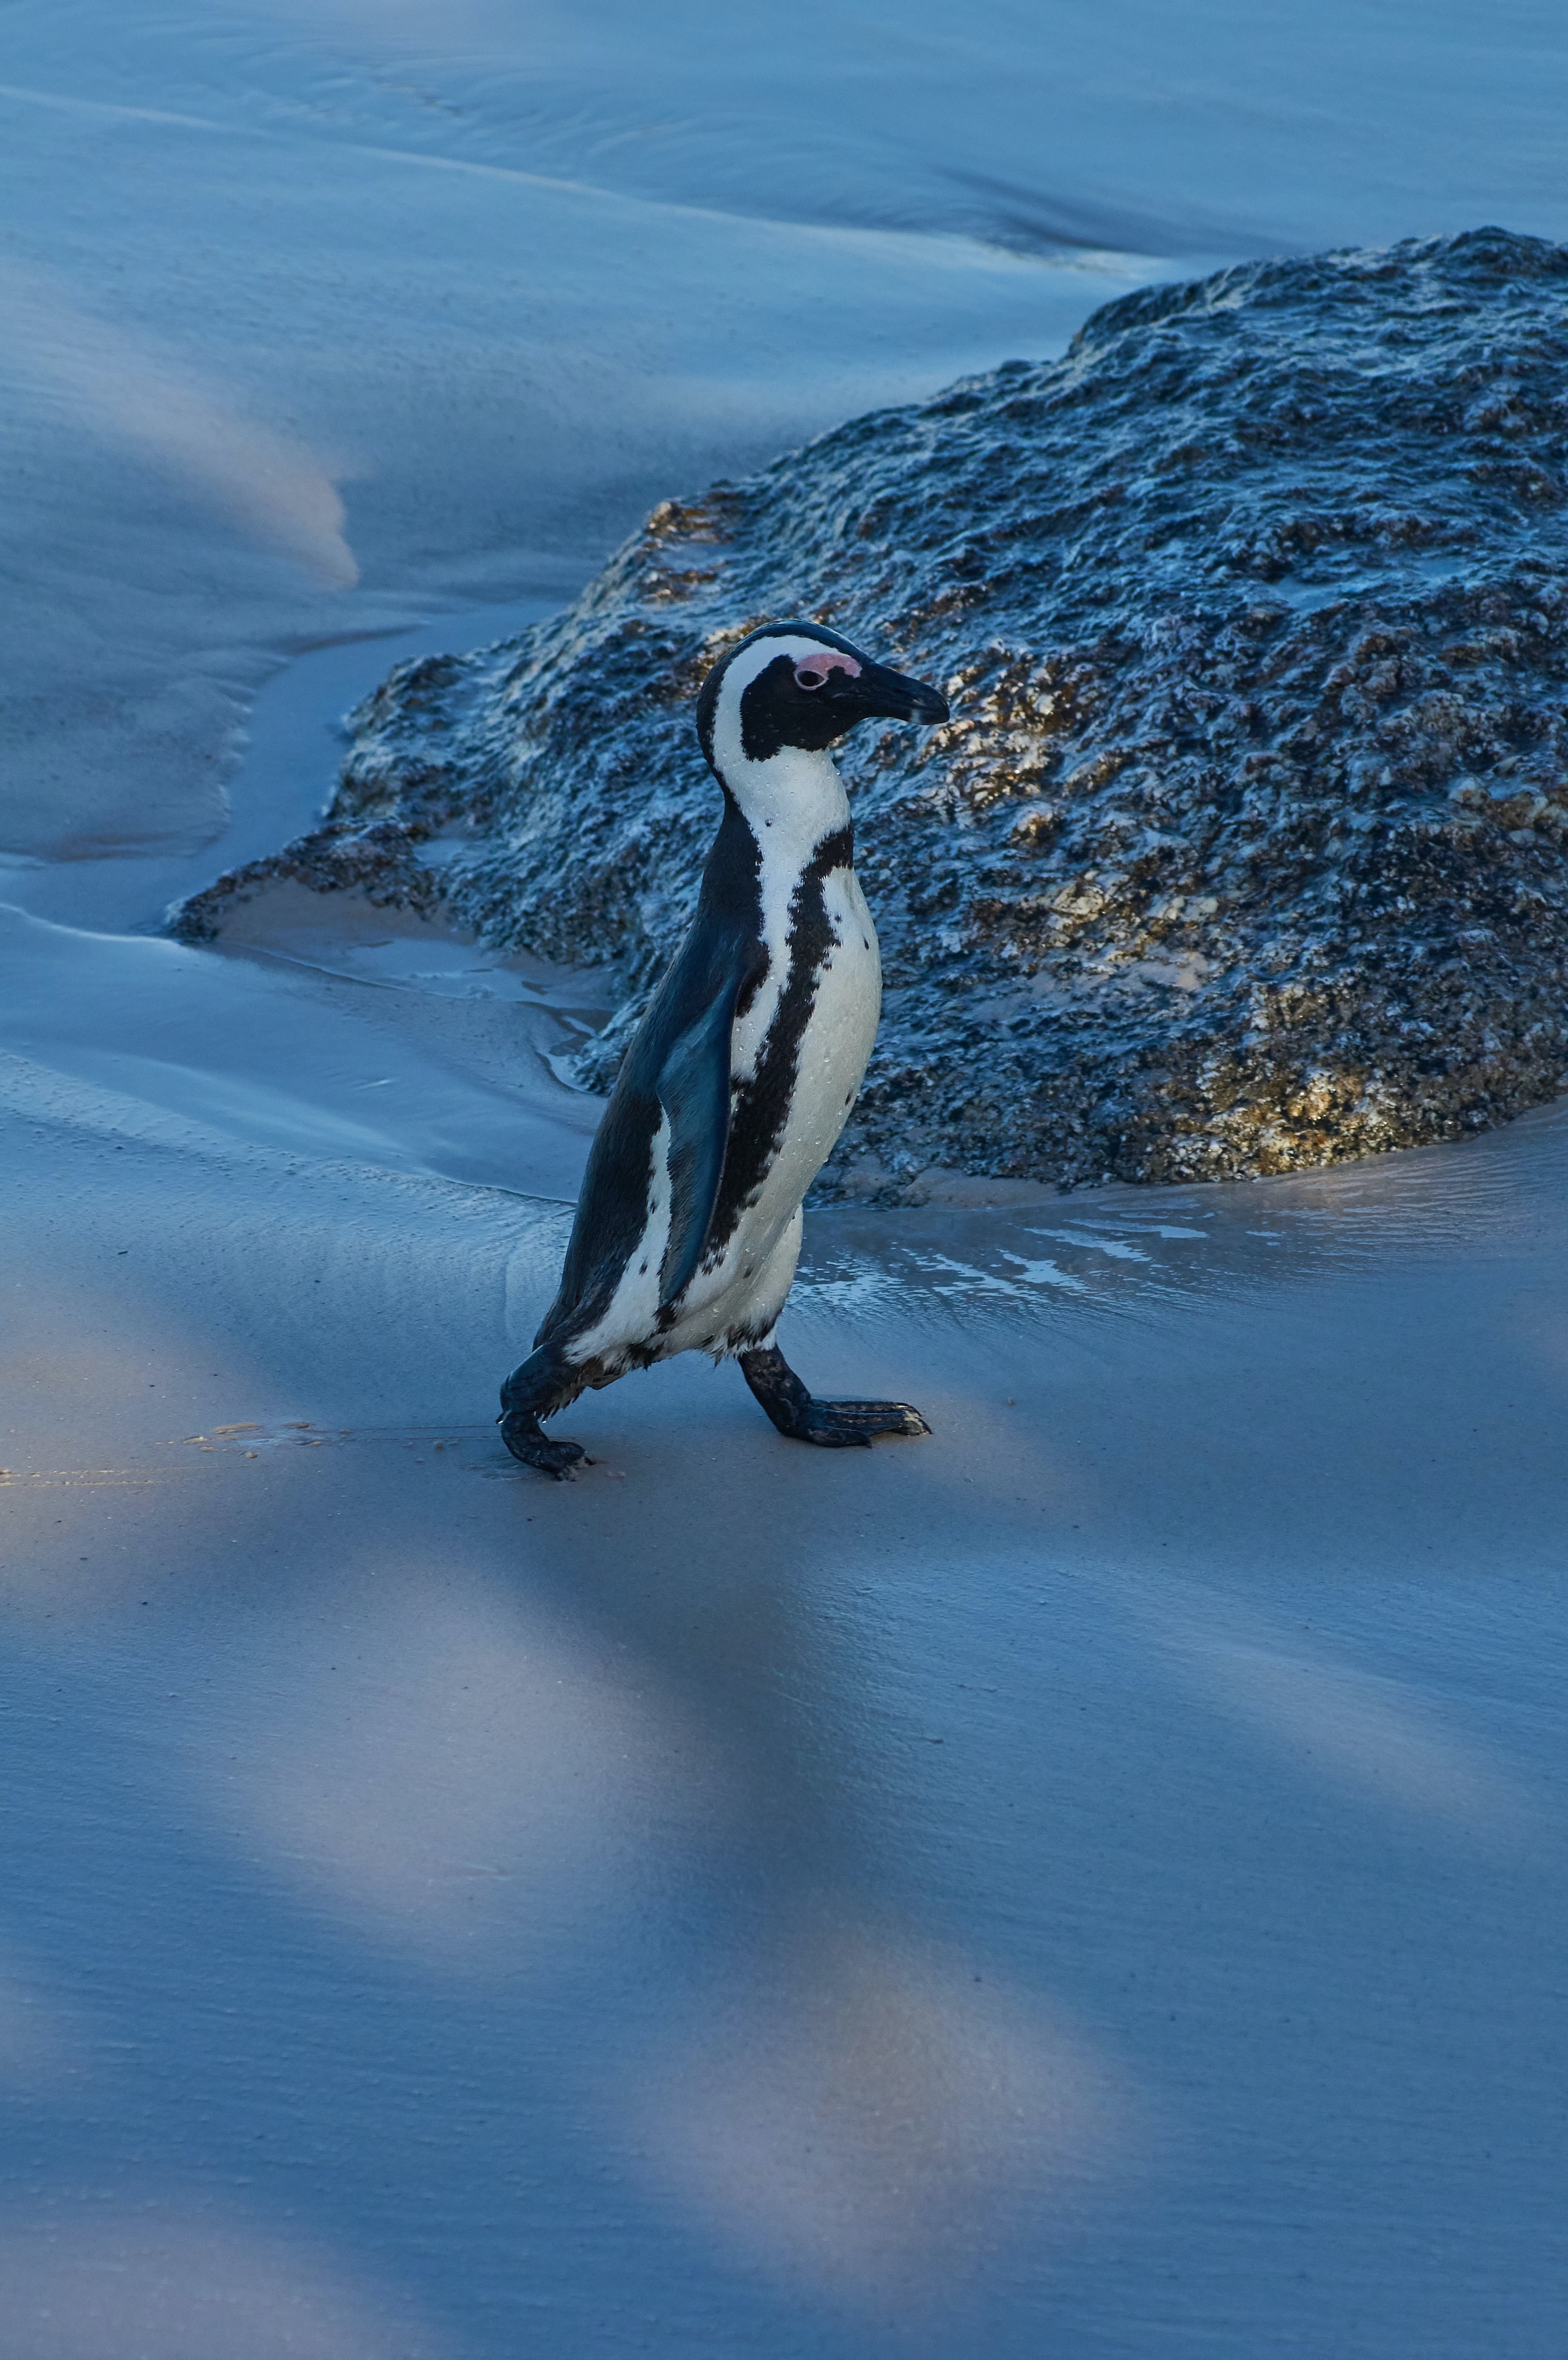 Скачать обои бесплатно Пингвин, Заснеженный, Лед, Снег, Животное, Животные, Забавный картинка на рабочий стол ПК